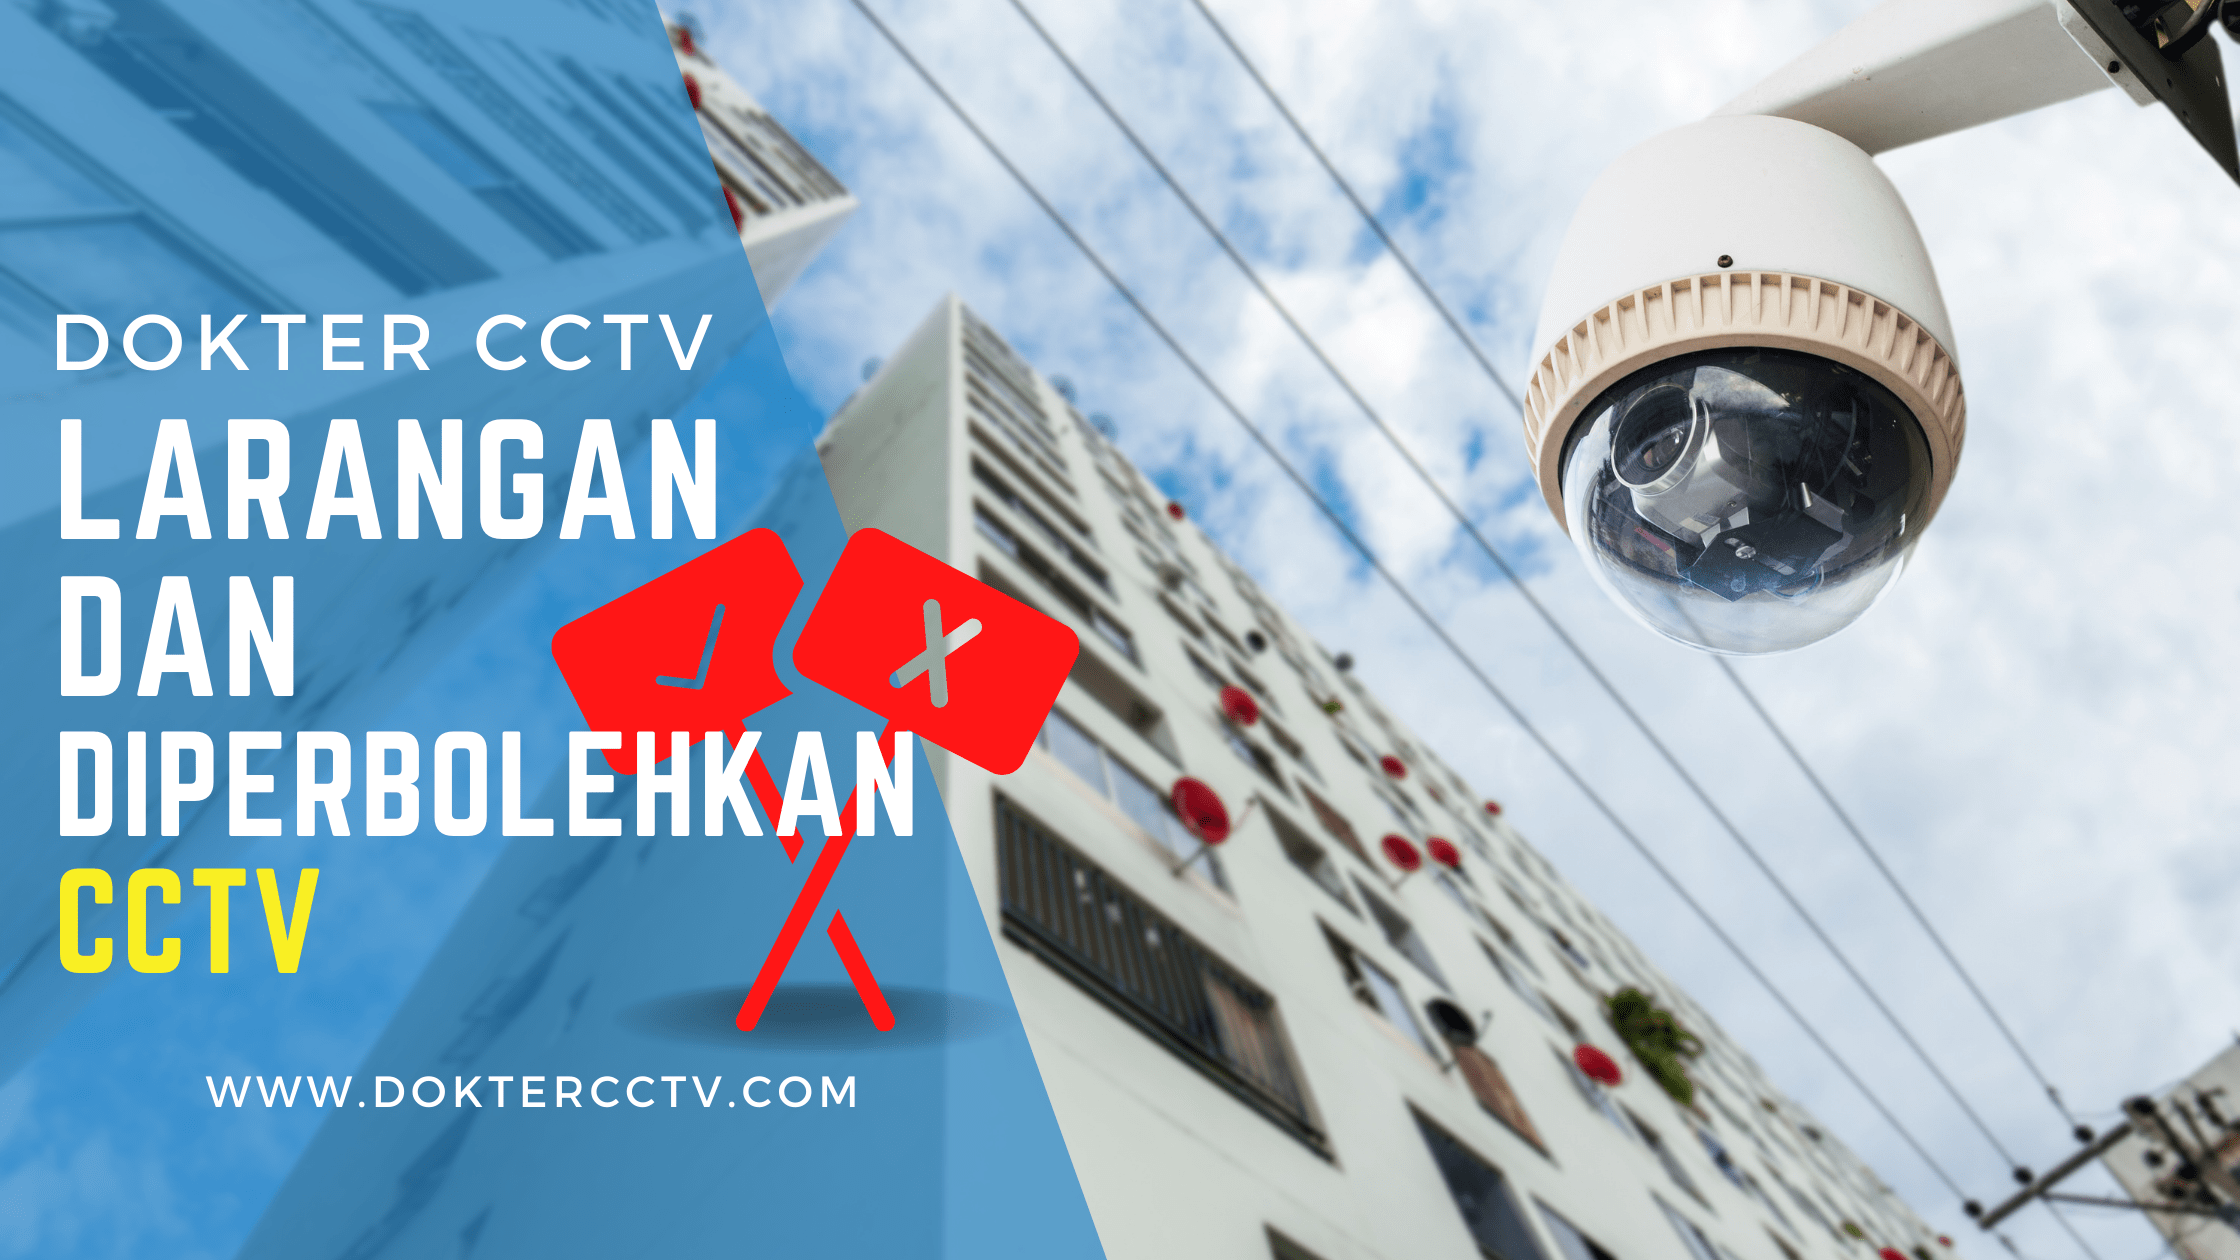 Larangan dan Diperbolehkan CCTV